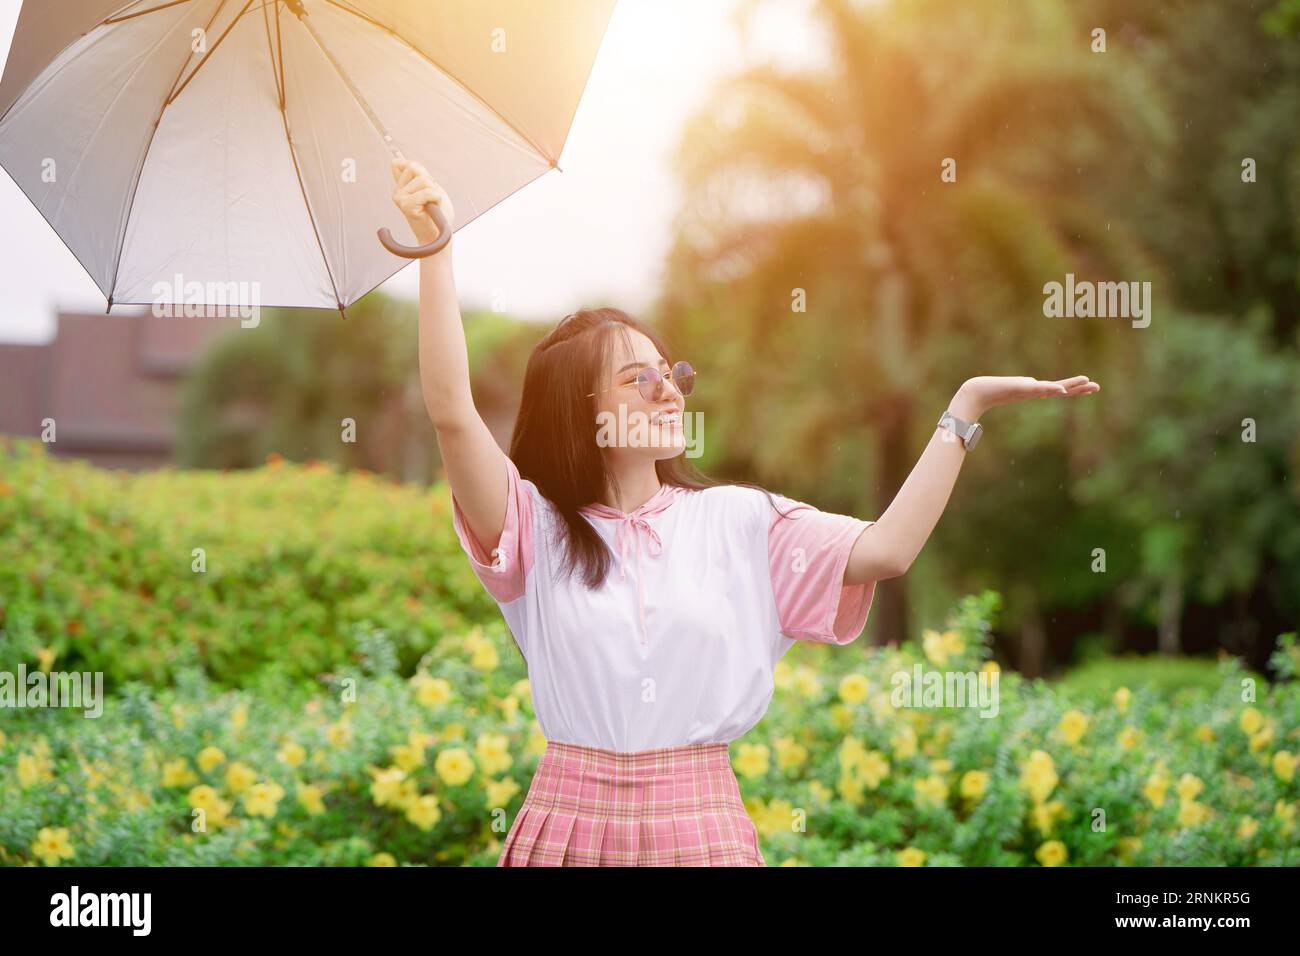 Glücklicher süßer asiatischer Teenager mit Regenschirm-Prätect aus Regen in der Regenzeit oder uv-Sonnenlicht im Sommer Stockfoto